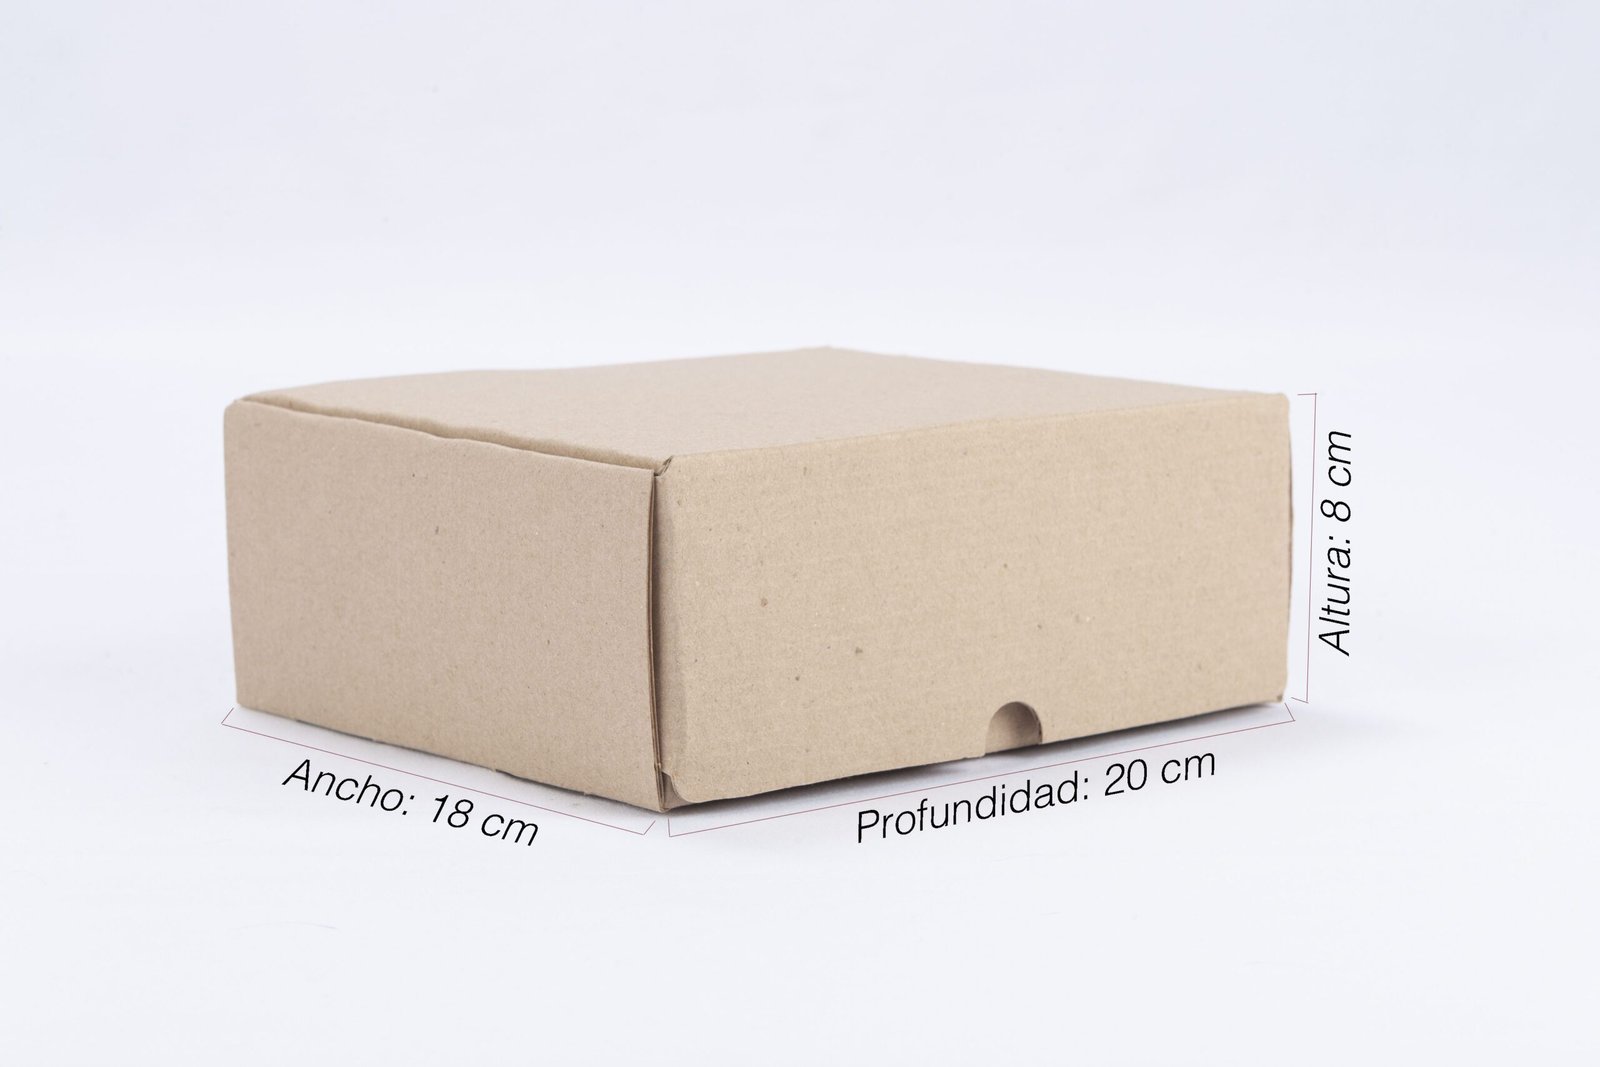 Caja rigida en carton corrugado